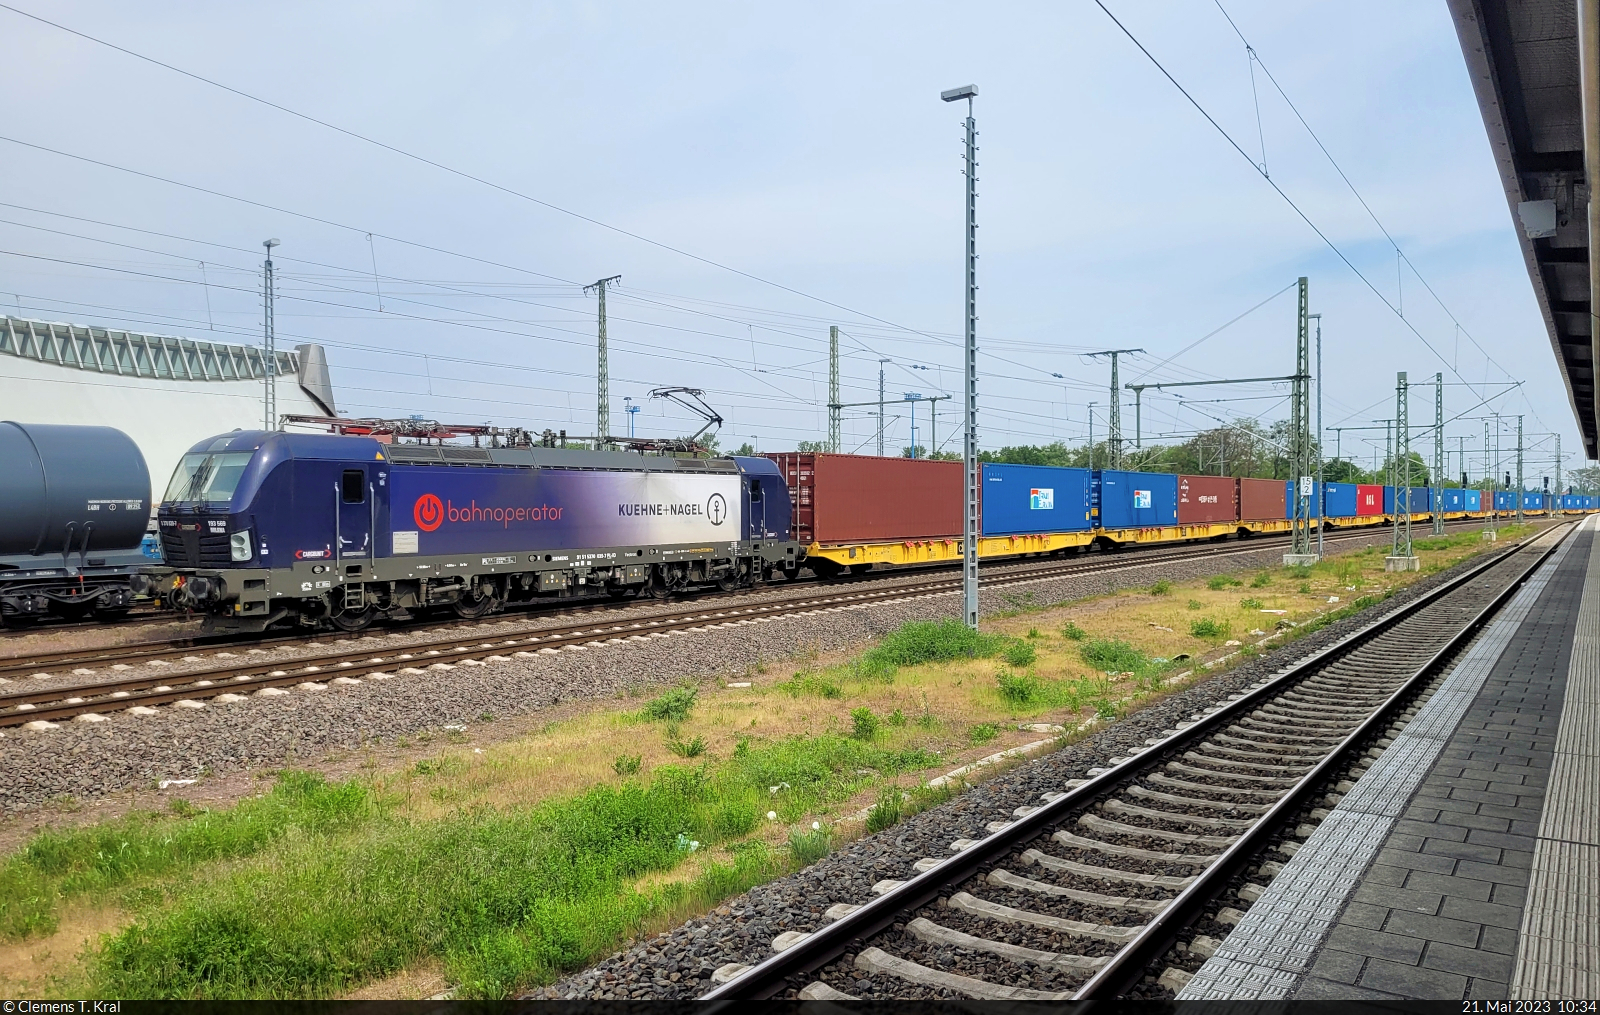 Vectron mal drei in Magdeburg Hbf (3/3):
5370 039-7 (193 569  Milena  | 91 51 5370 039-7 PL-ID | Siemens Vectron) zieht mit Containern an einem Kessel- und einem Schwellenzug Richtung Braunschweig vorbei, die ebenfalls mit Siemens Vectron bespannt sind.

🧰 CARGOUNIT Sp. z o.o. | Industrial Division Sp. z o.o. (ID), vermietet an Bahnoperator Polska sp. z o.o. (Bahnoperator GmbH)
🕓 21.5.2023 | 10:34 Uhr